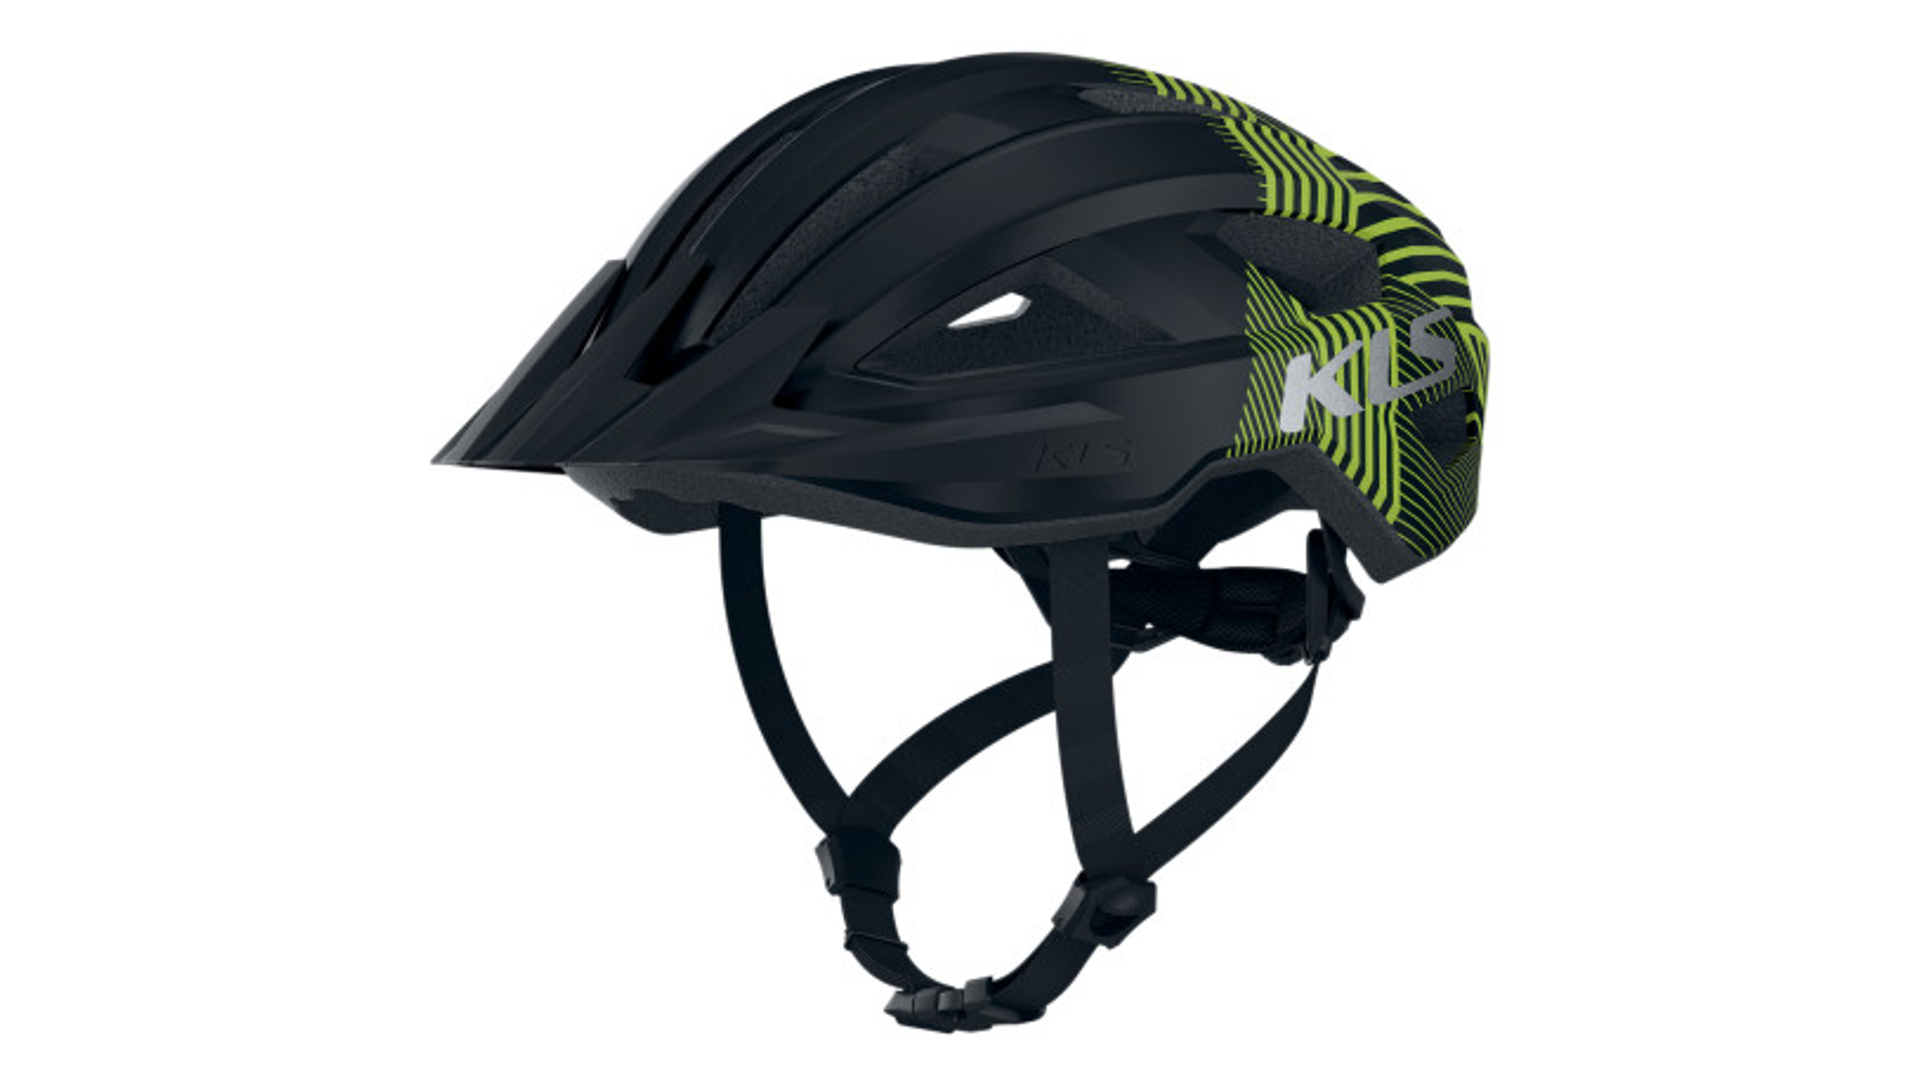 KELLYS Daze MTB XC kerékpáros sisak, black-green, S/M (52-55 cm)